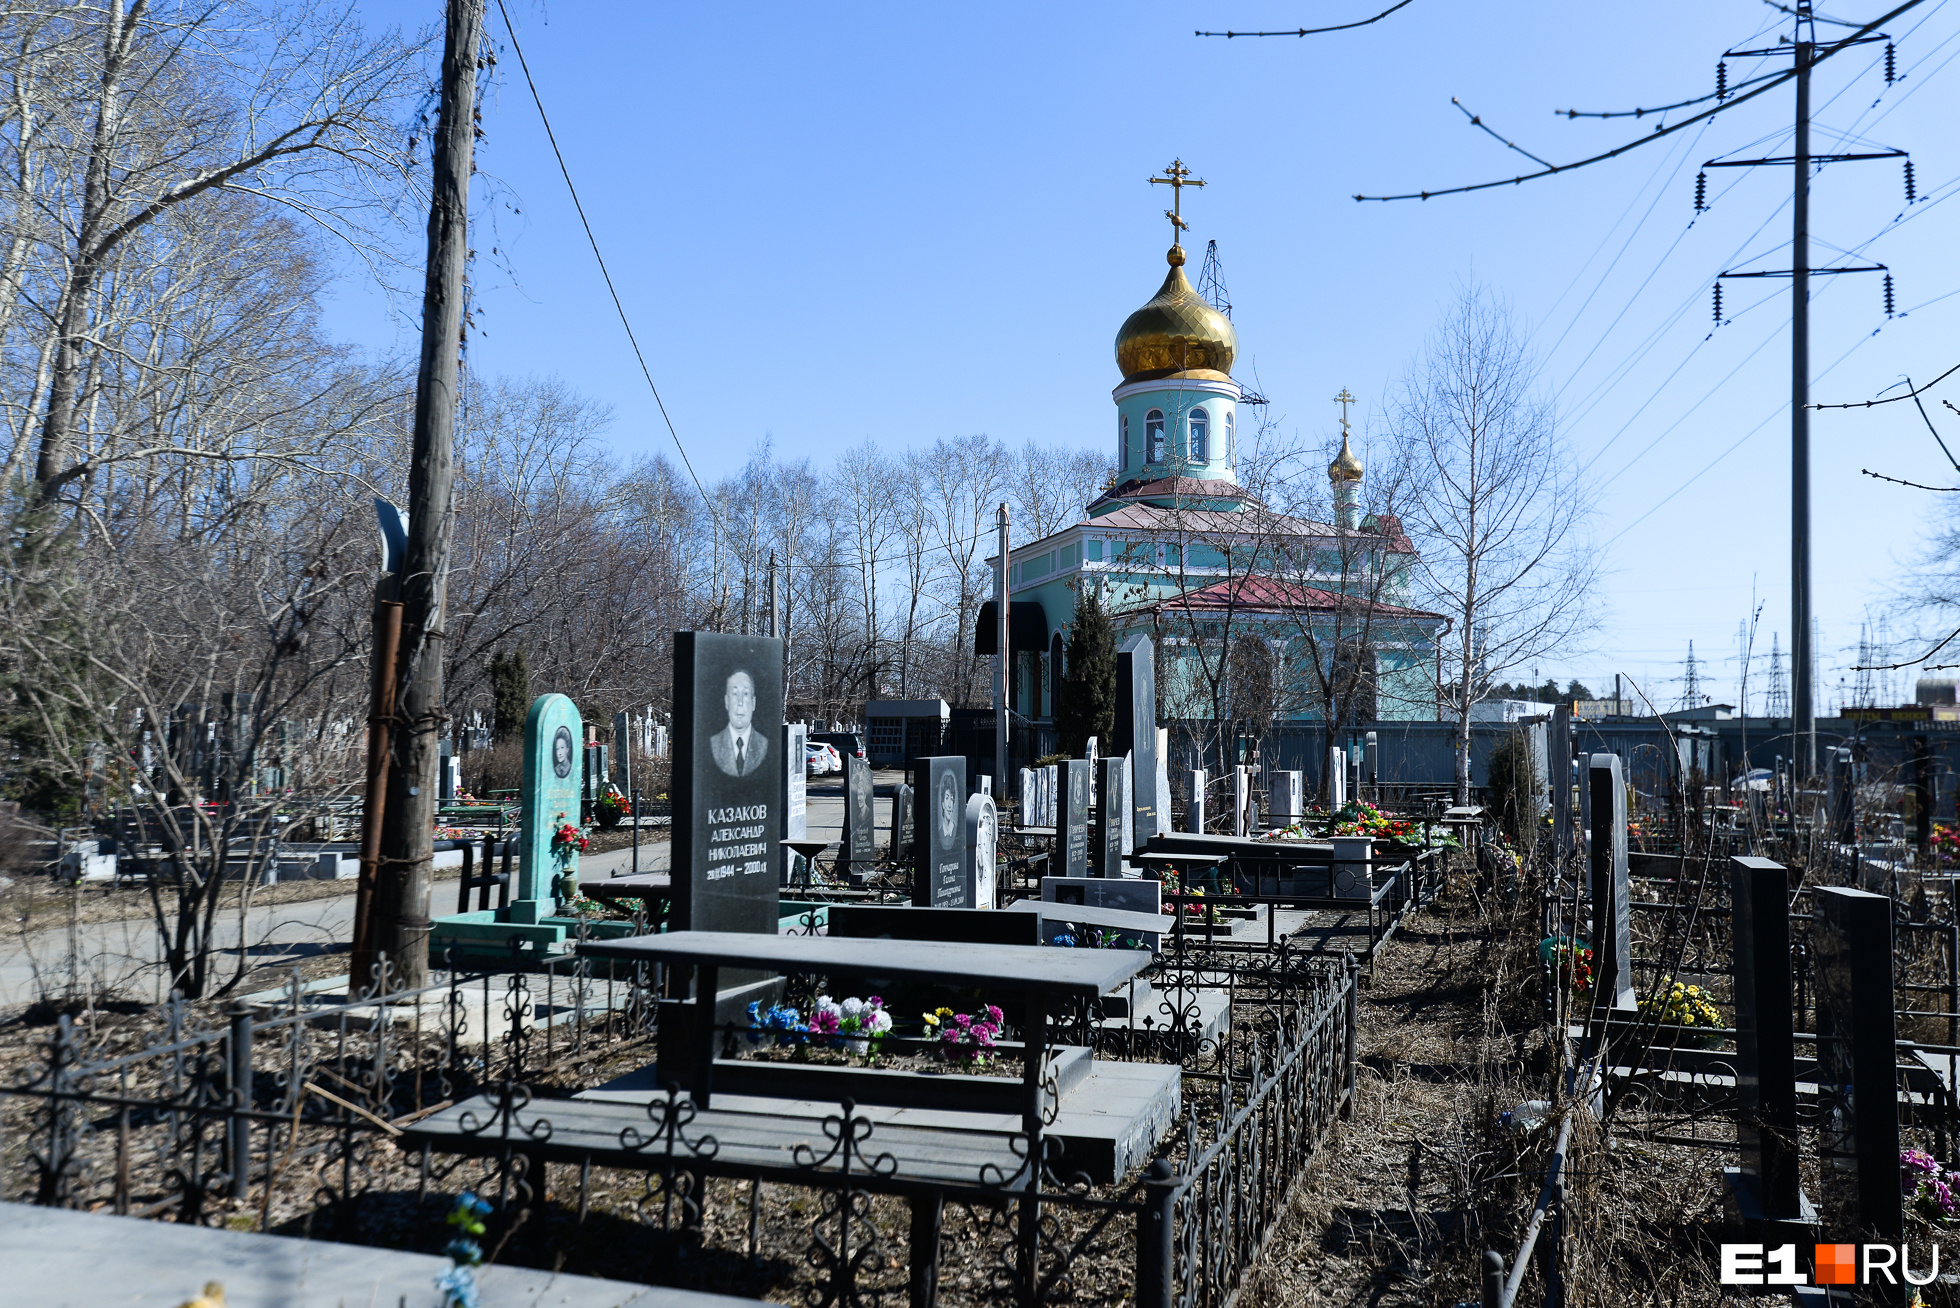 Как обычно бывает на кладбищах, ближе к церкви расположены самые внушительные надгробия